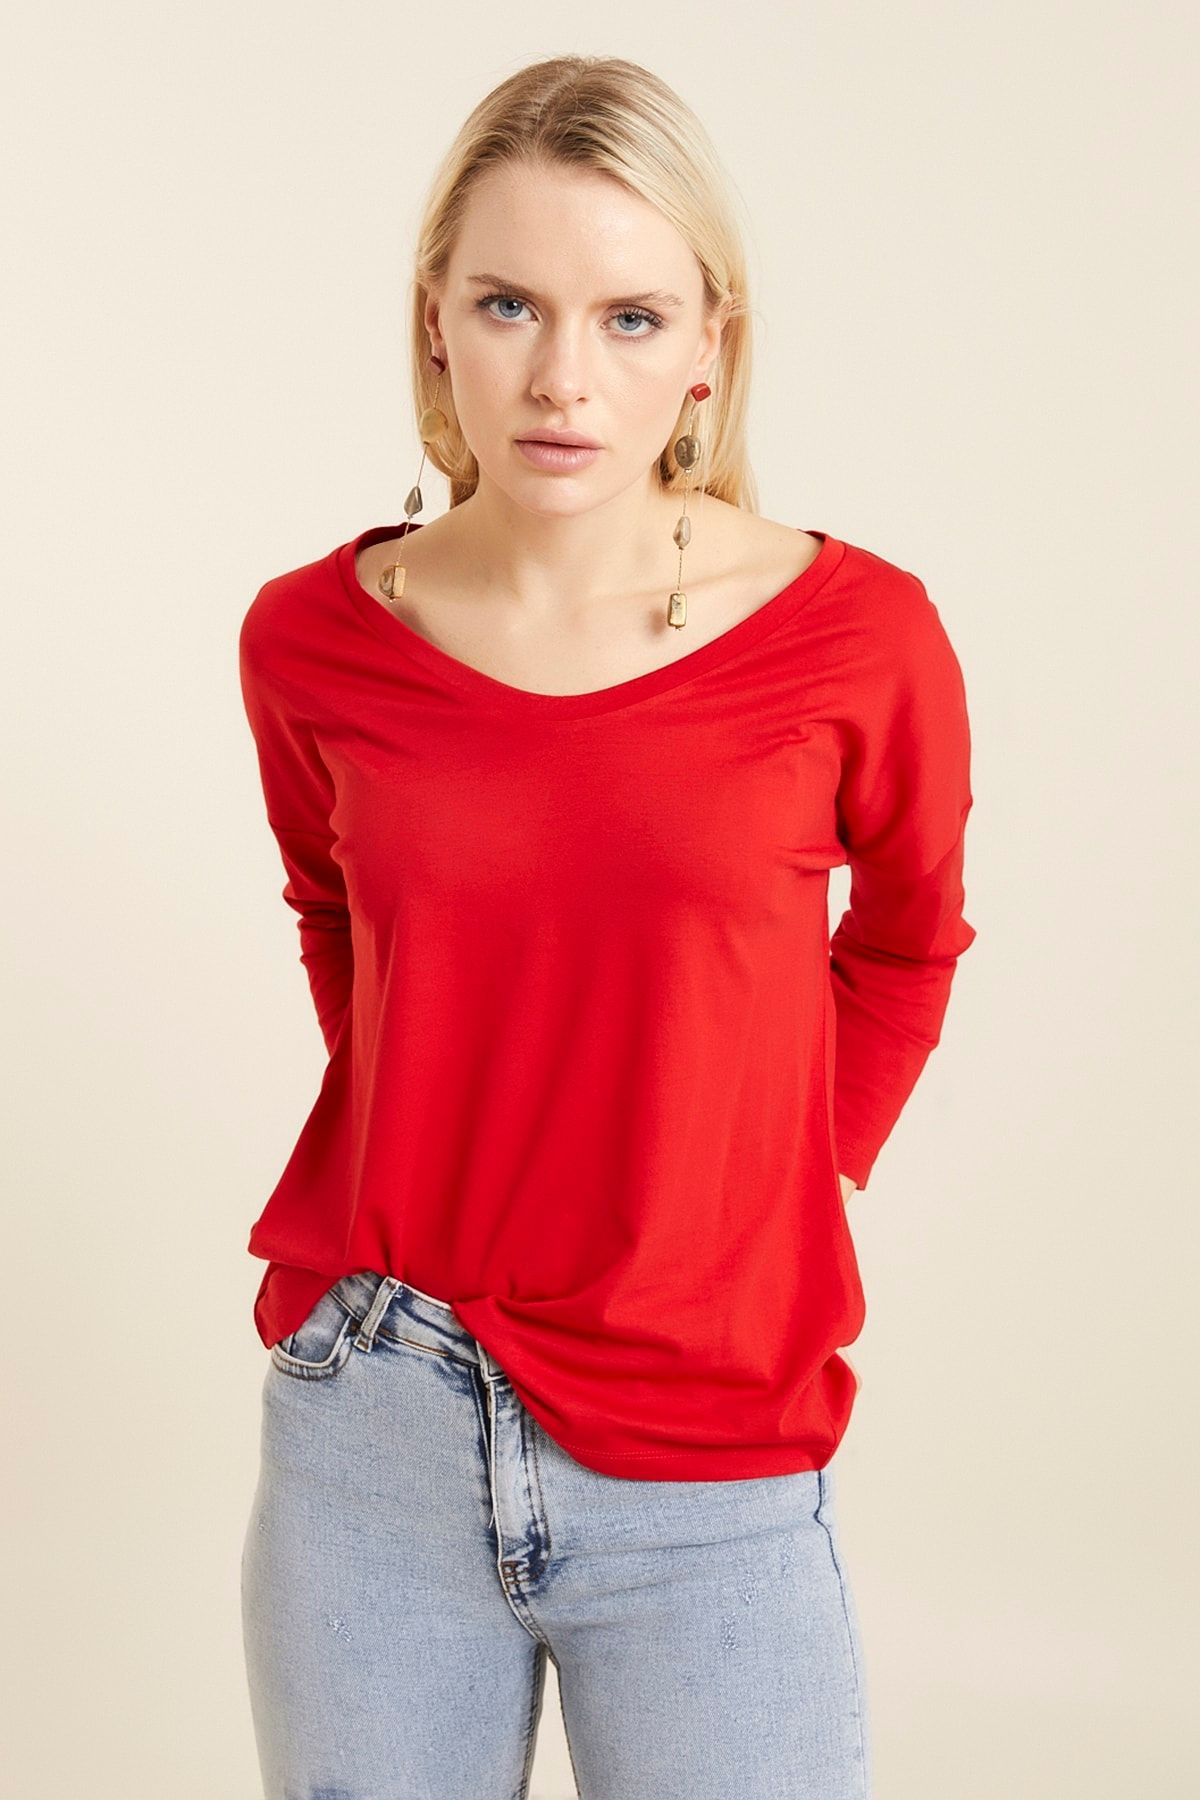 Hanna's Kadın Kırmızı Geniş Yakalı Basic T-shirt